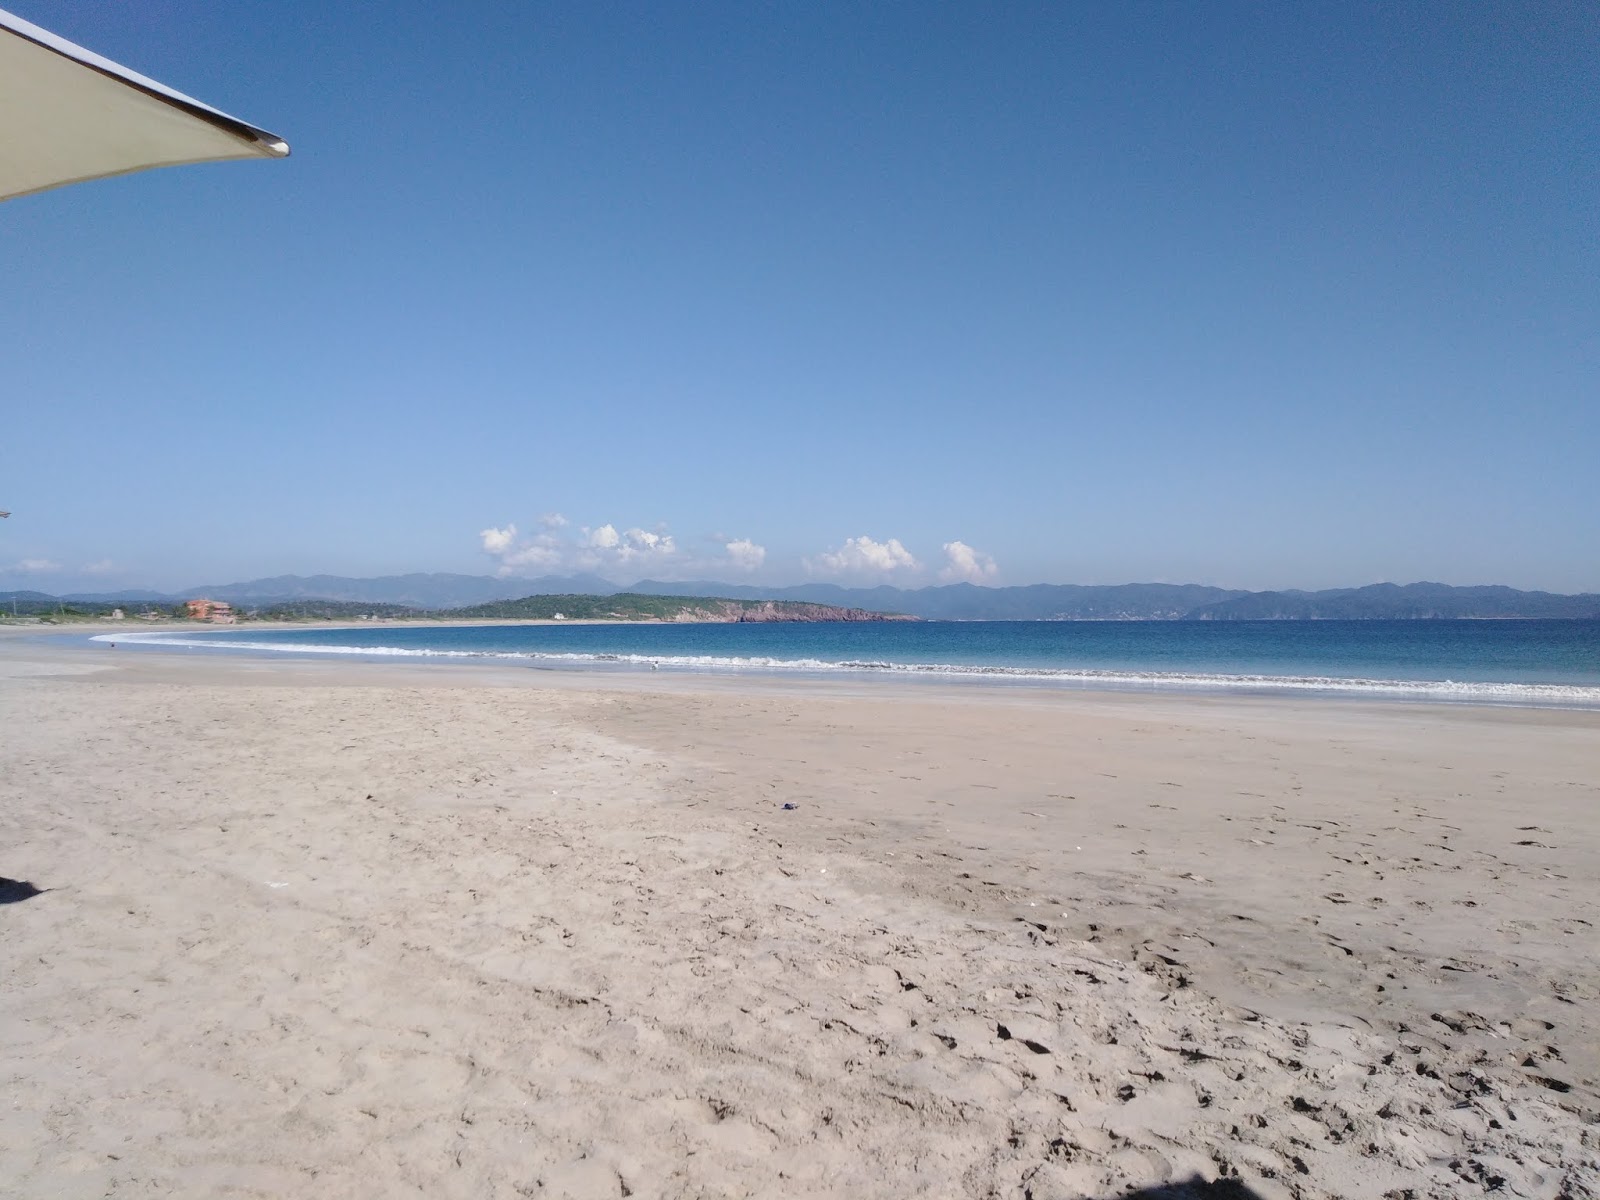 Fotografie cu Morita beach - locul popular printre cunoscătorii de relaxare